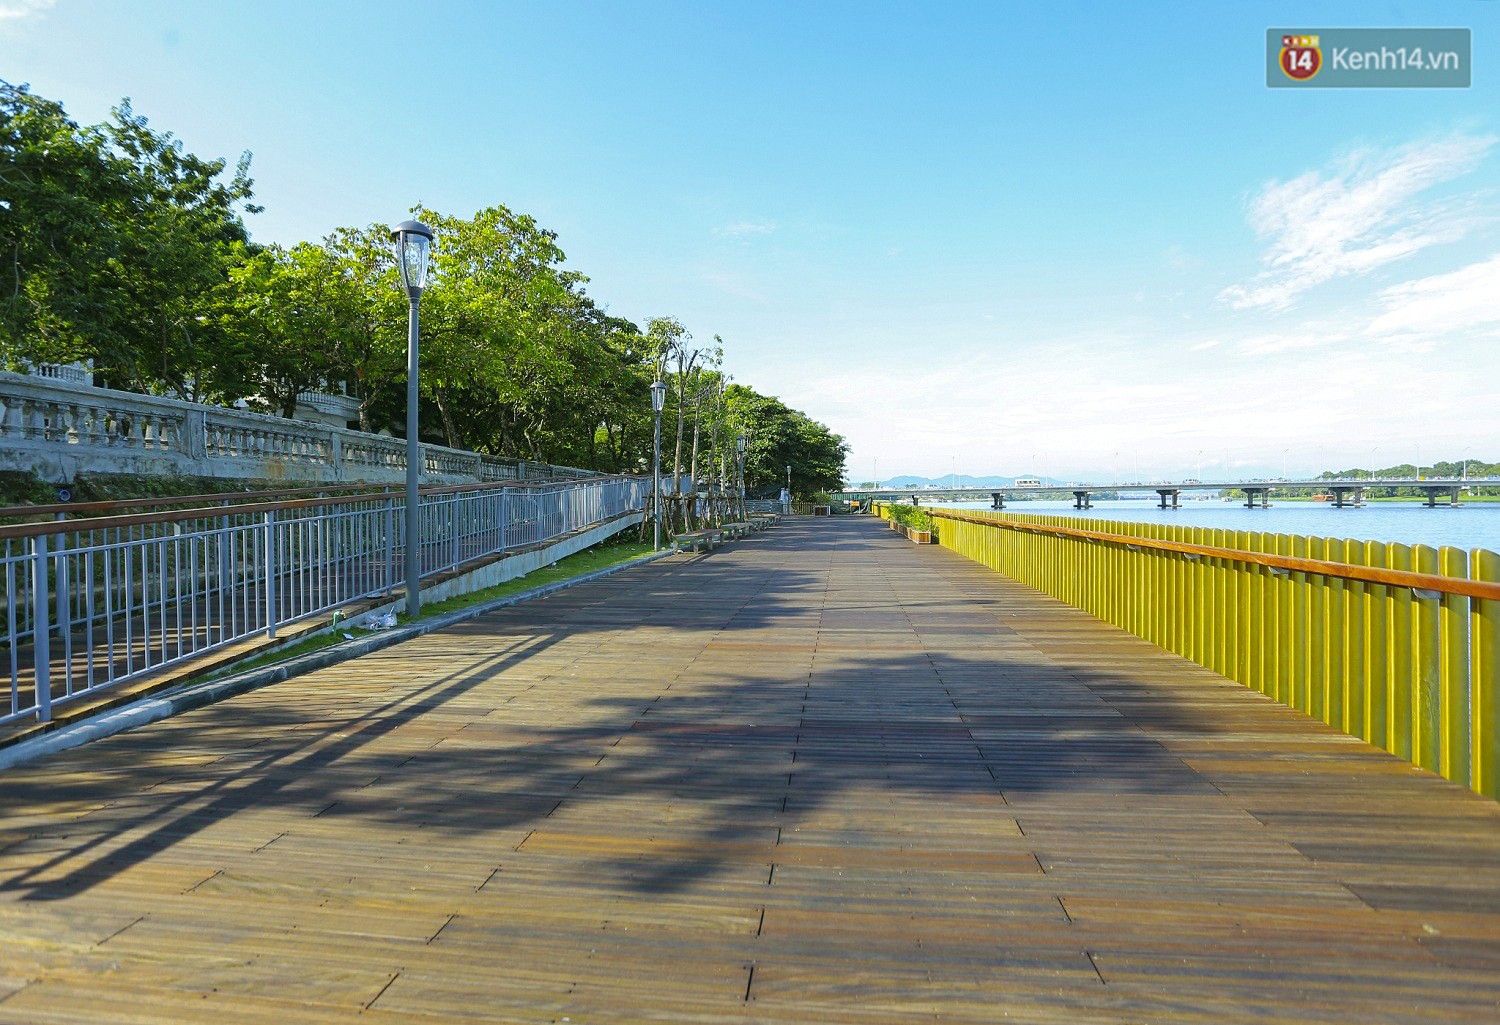 Cầu đi bộ lát gỗ lim 64 tỷ trên sông Hương trở thành địa điểm hot nhất ở Huế dù chưa khánh thành - Ảnh 3.